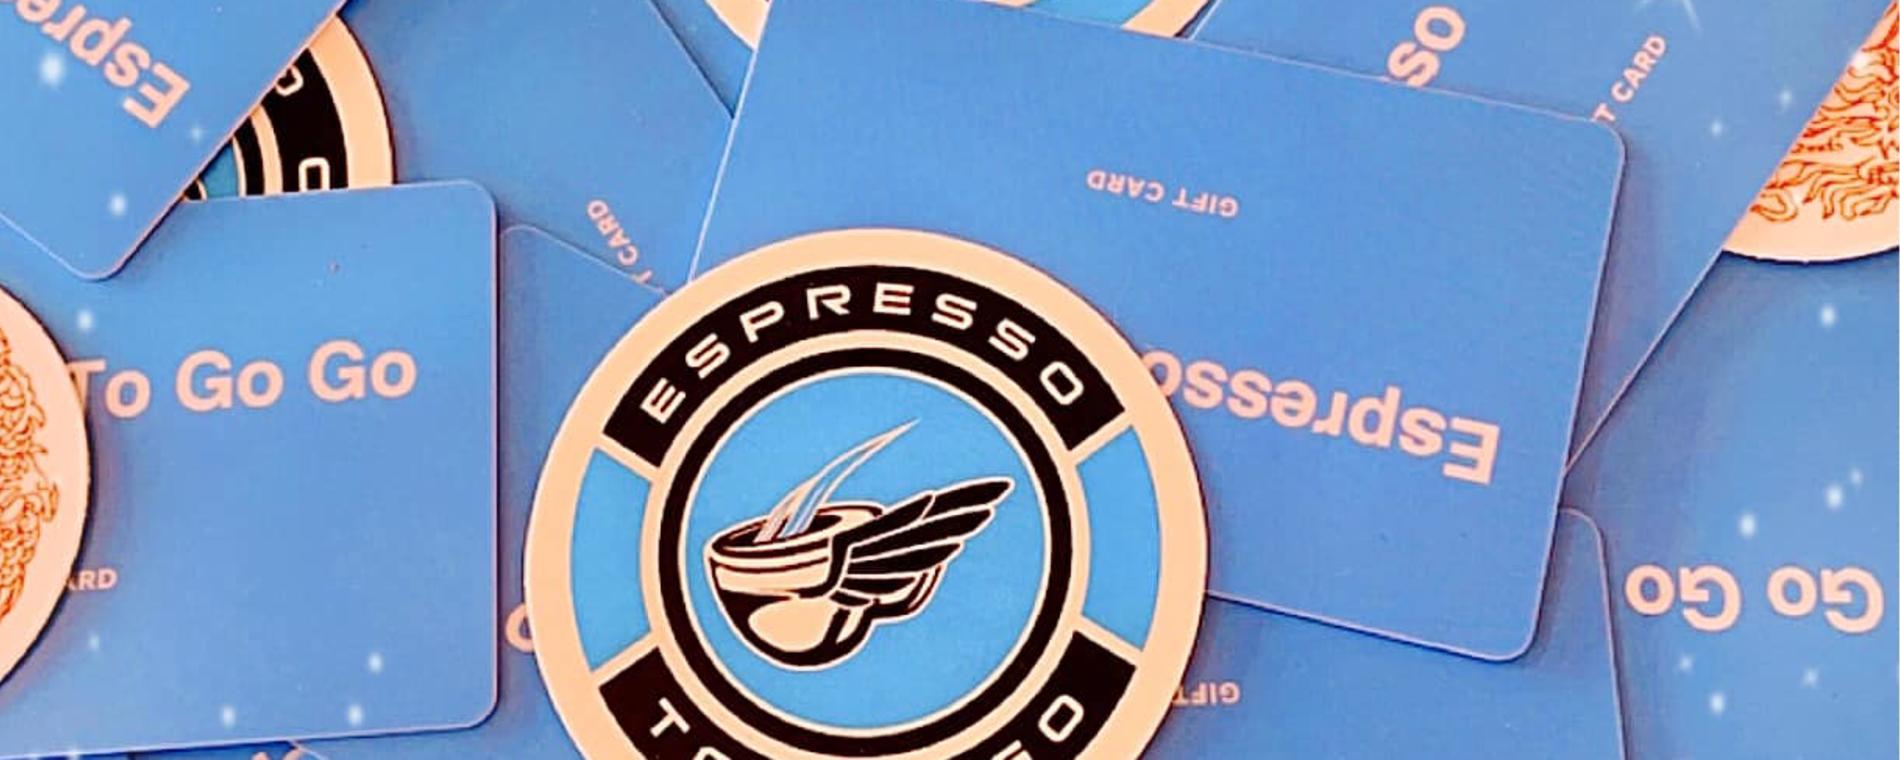 Espresso To Go Go Iced Gift cards